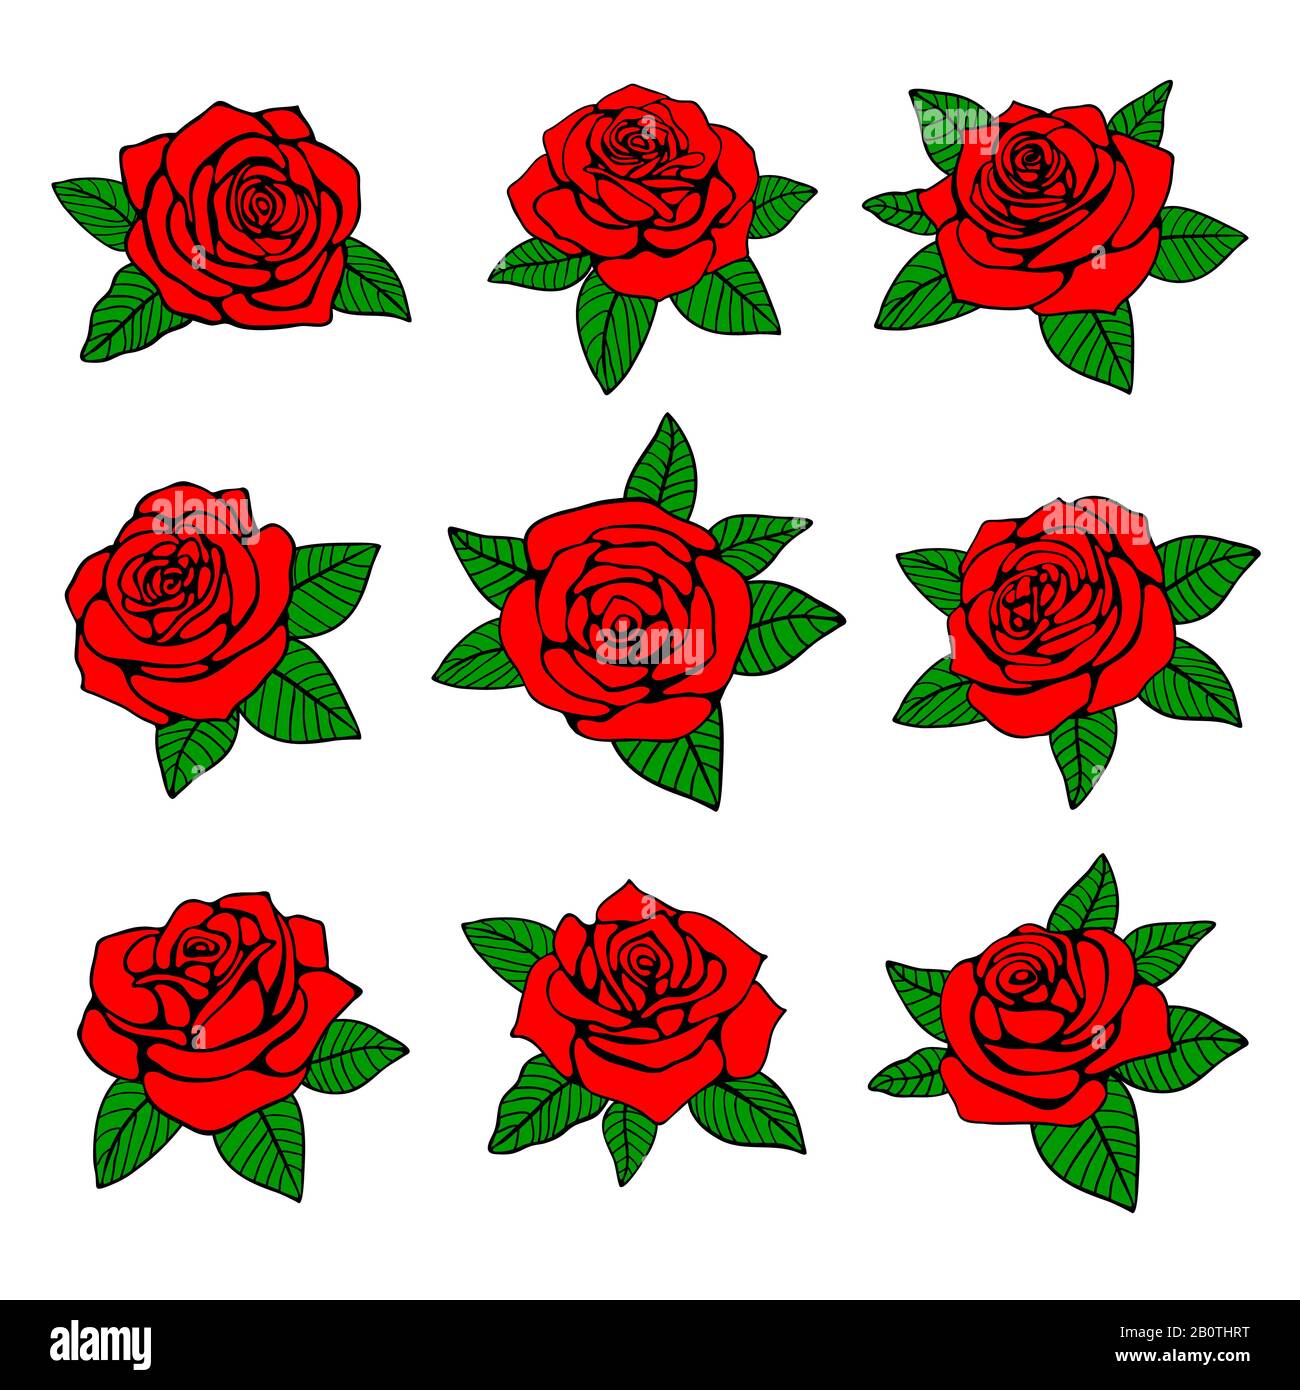 Rose rosse con foglie verdi disegno vettoriale per tatuaggio. Natura rosa rossa, con foglia verde, illustrazione di tatuaggio rosa Illustrazione Vettoriale